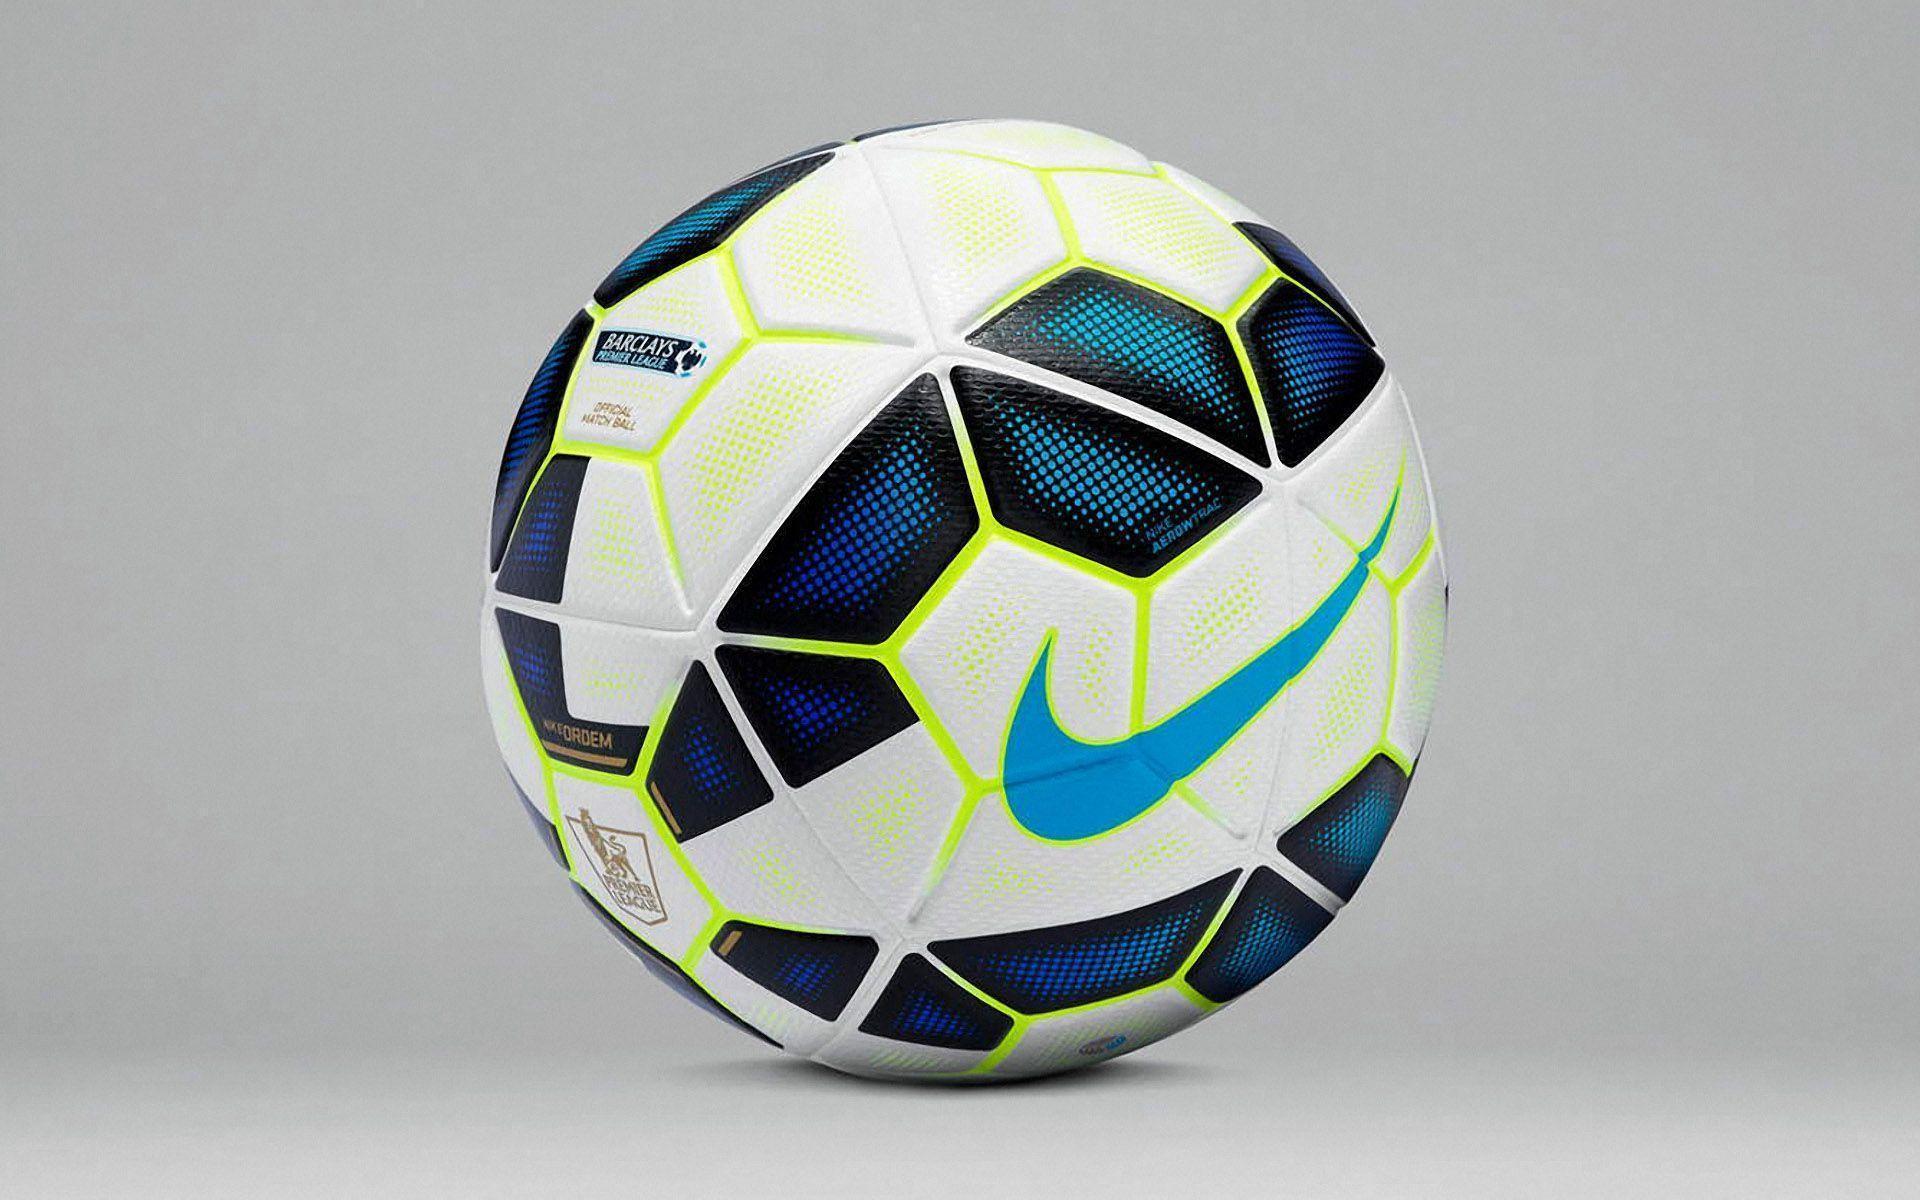 New Nike Soccer Ball